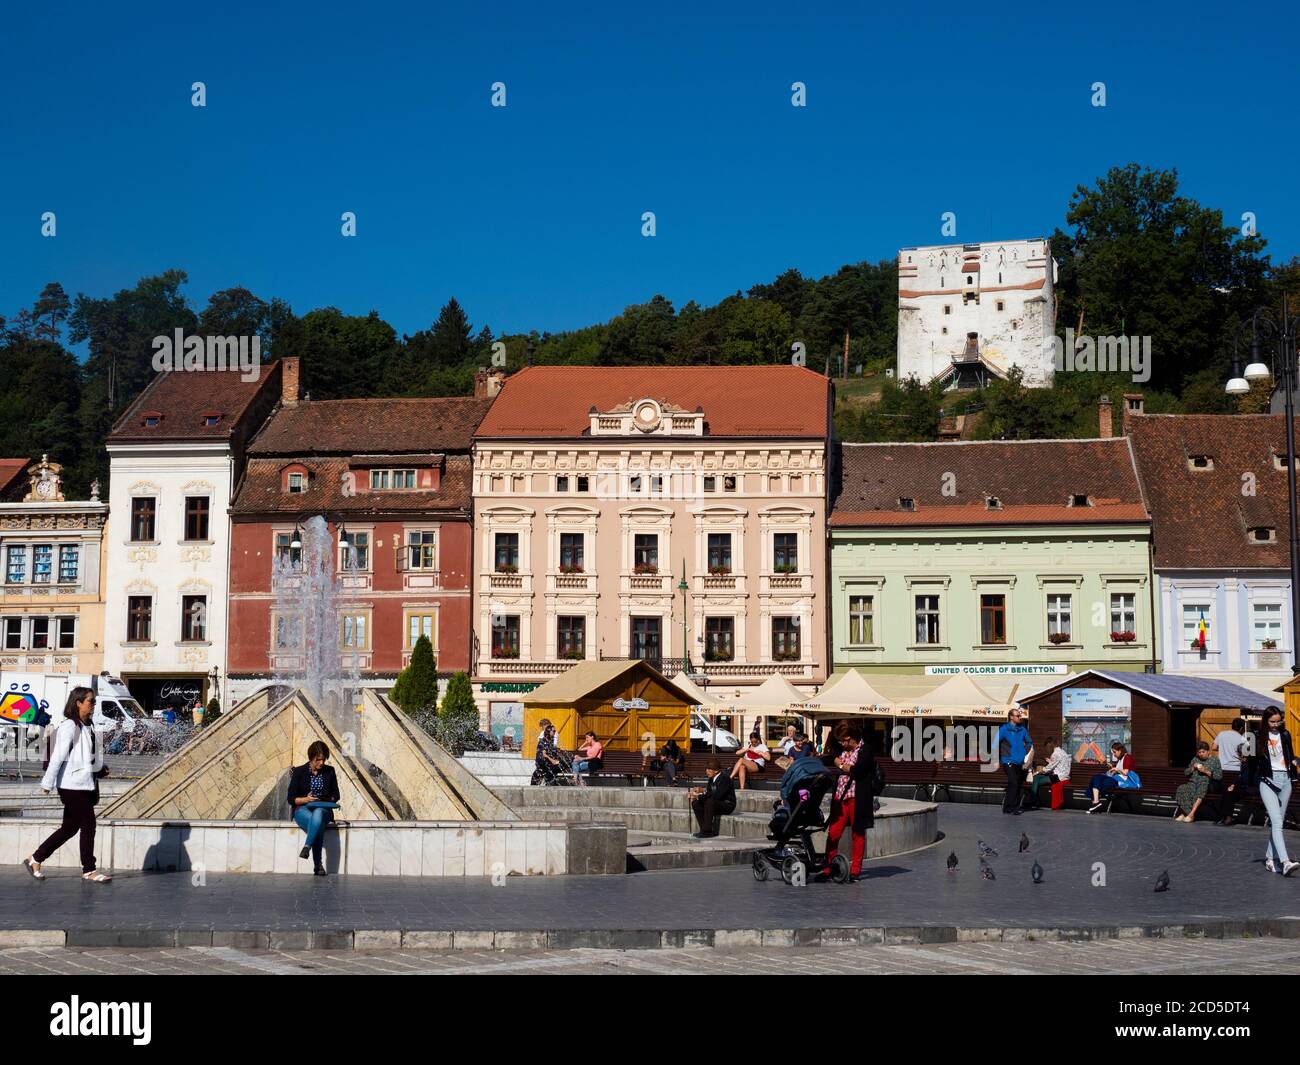 Town square in old town, Piata Sfatului, Brasov, Transylvania, Romania Stock Photo